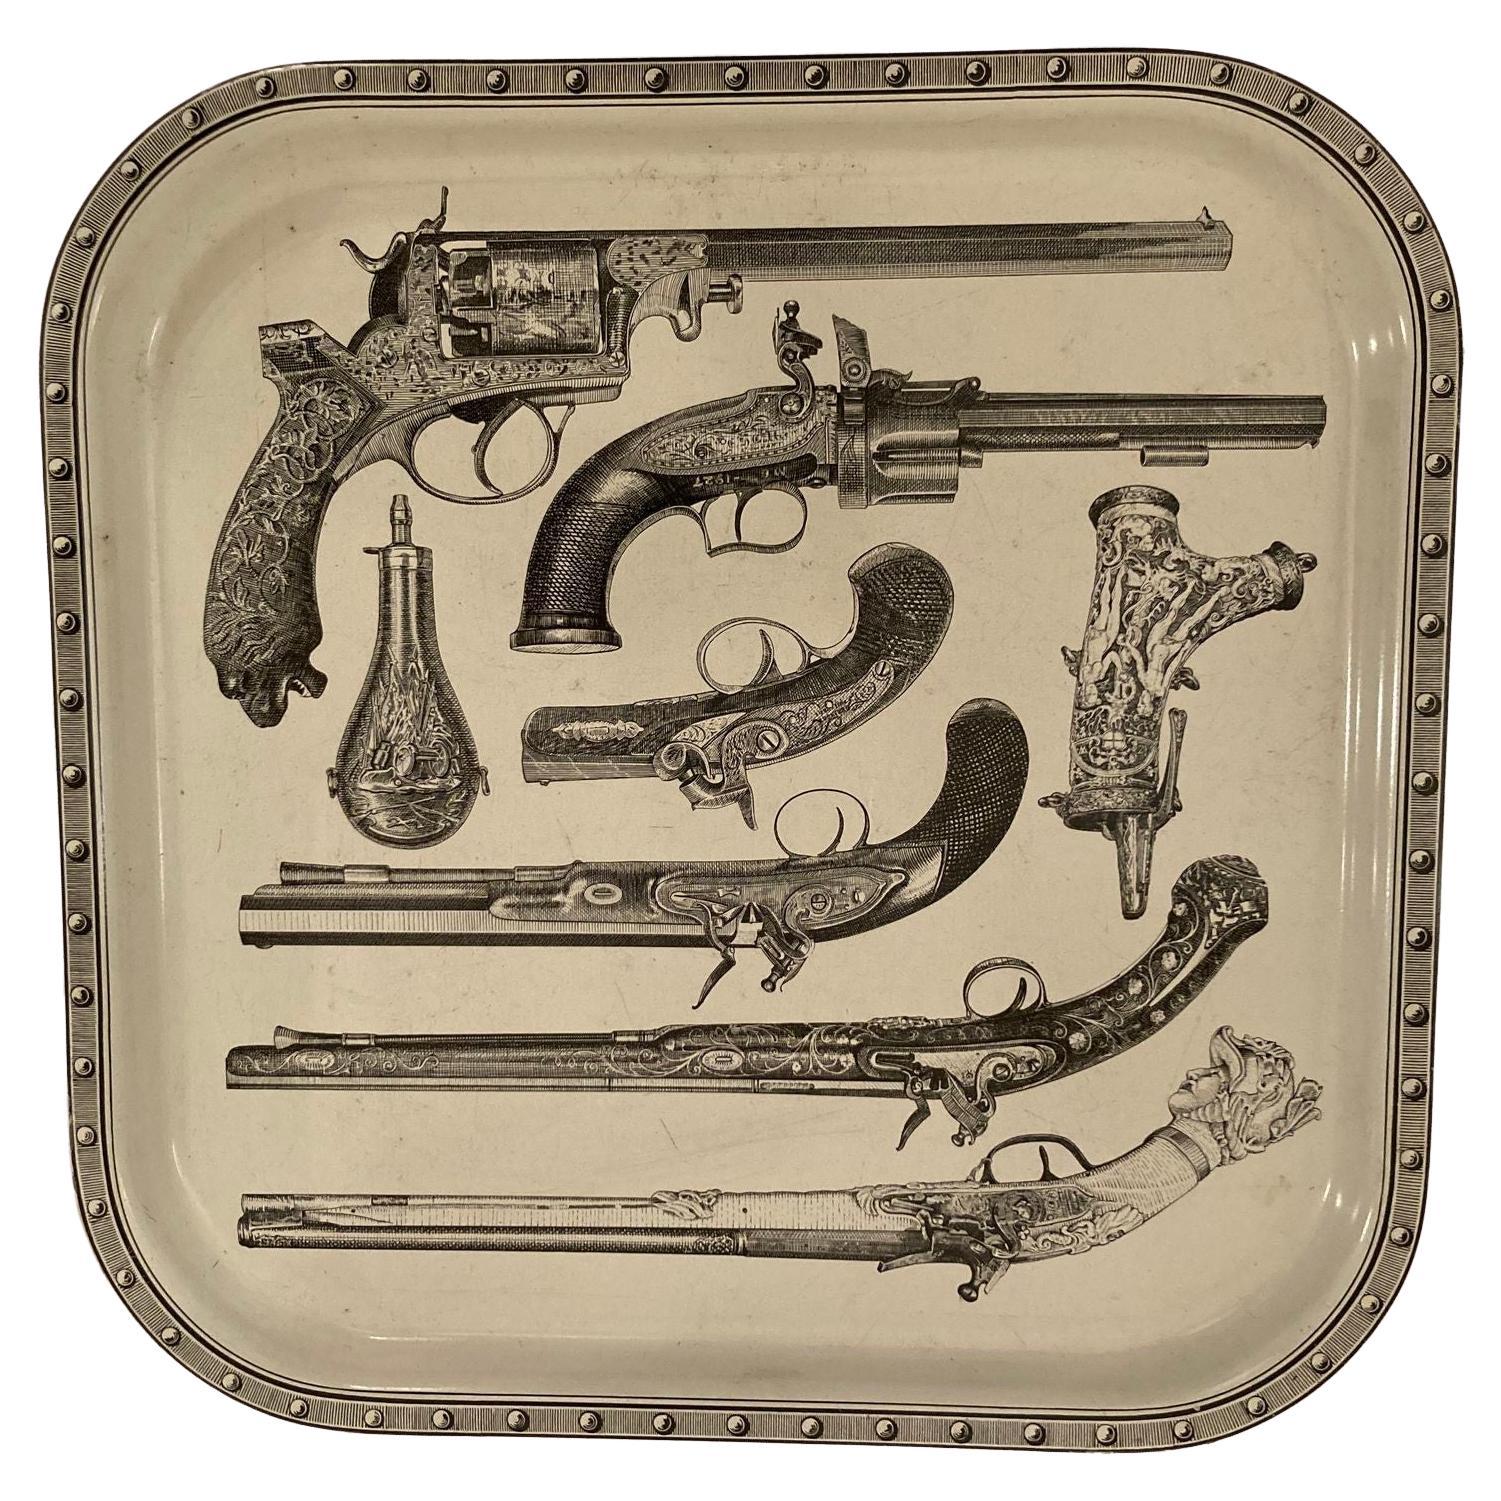 Piero Fornasetti zugeschriebenes Serviertablett aus Metall mit Pistolen und Bargeschirr, 1960er Jahre